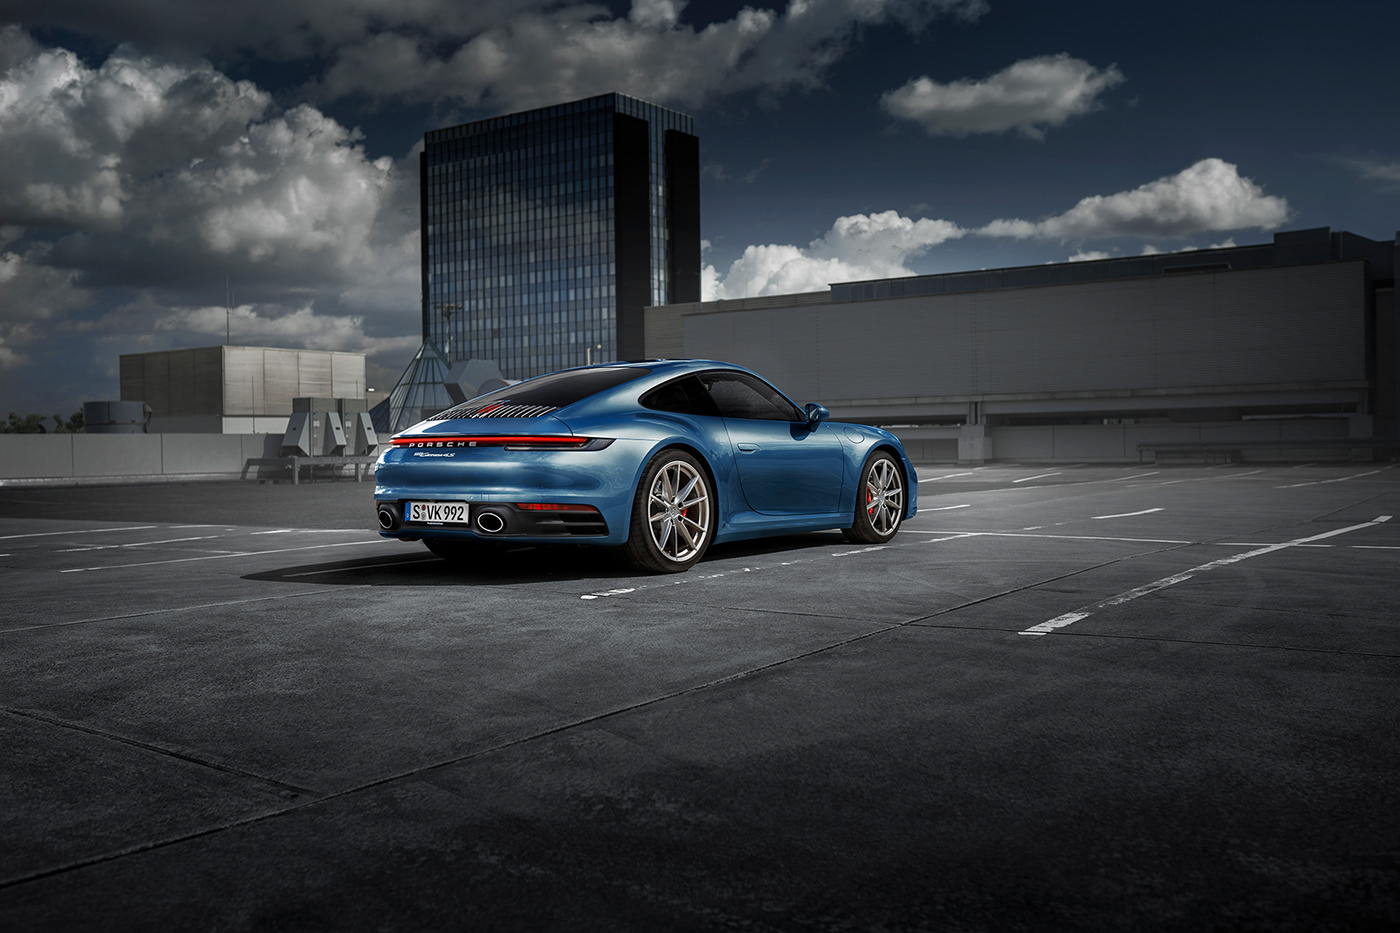 Porsche Porsche992 carrera 4s automotive   car blue grey concrete parkinglot